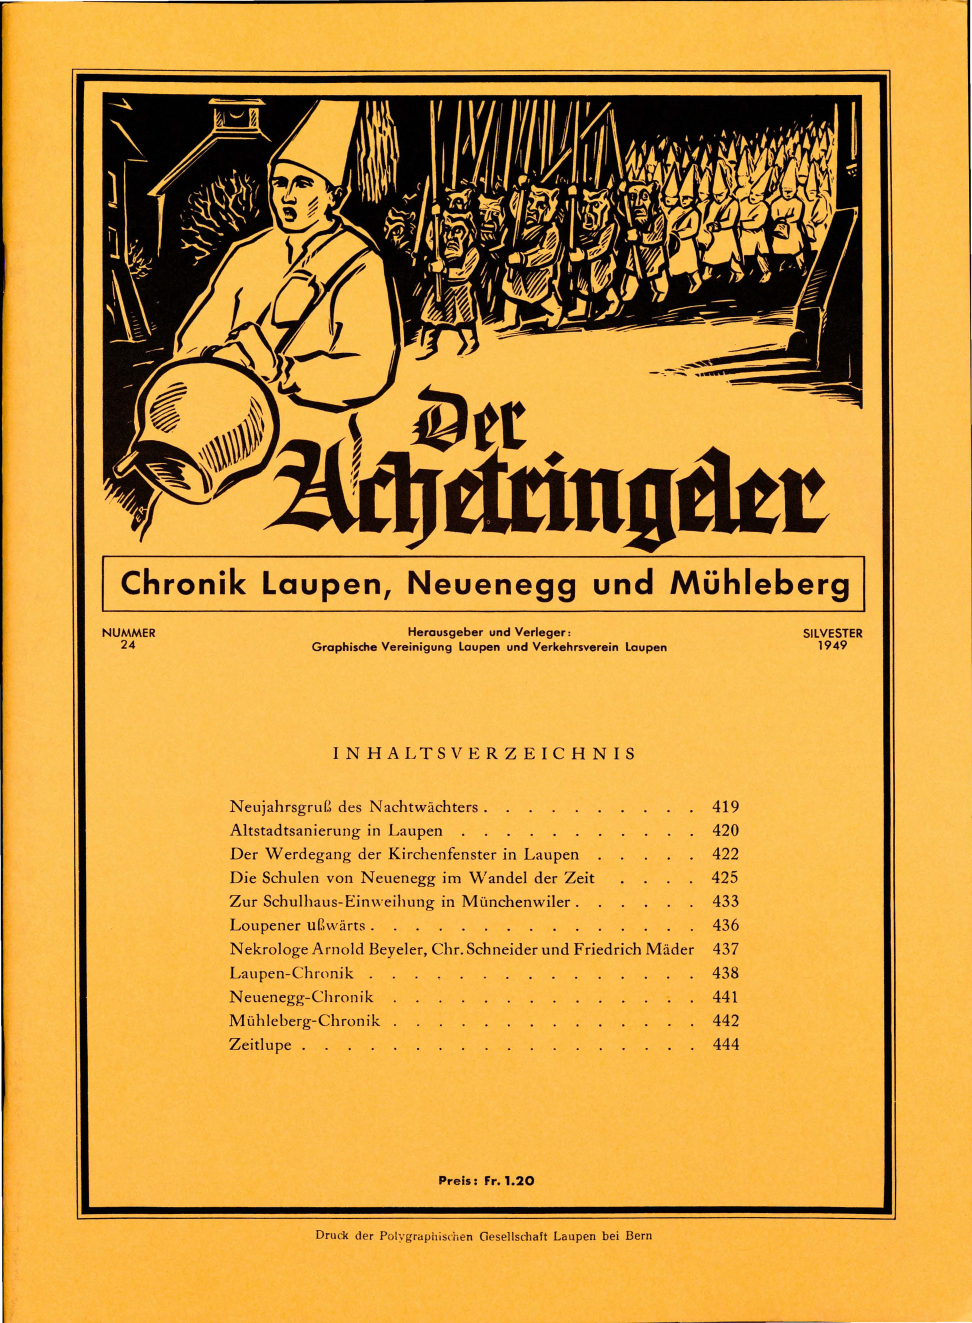 Der Achetringeler 1949